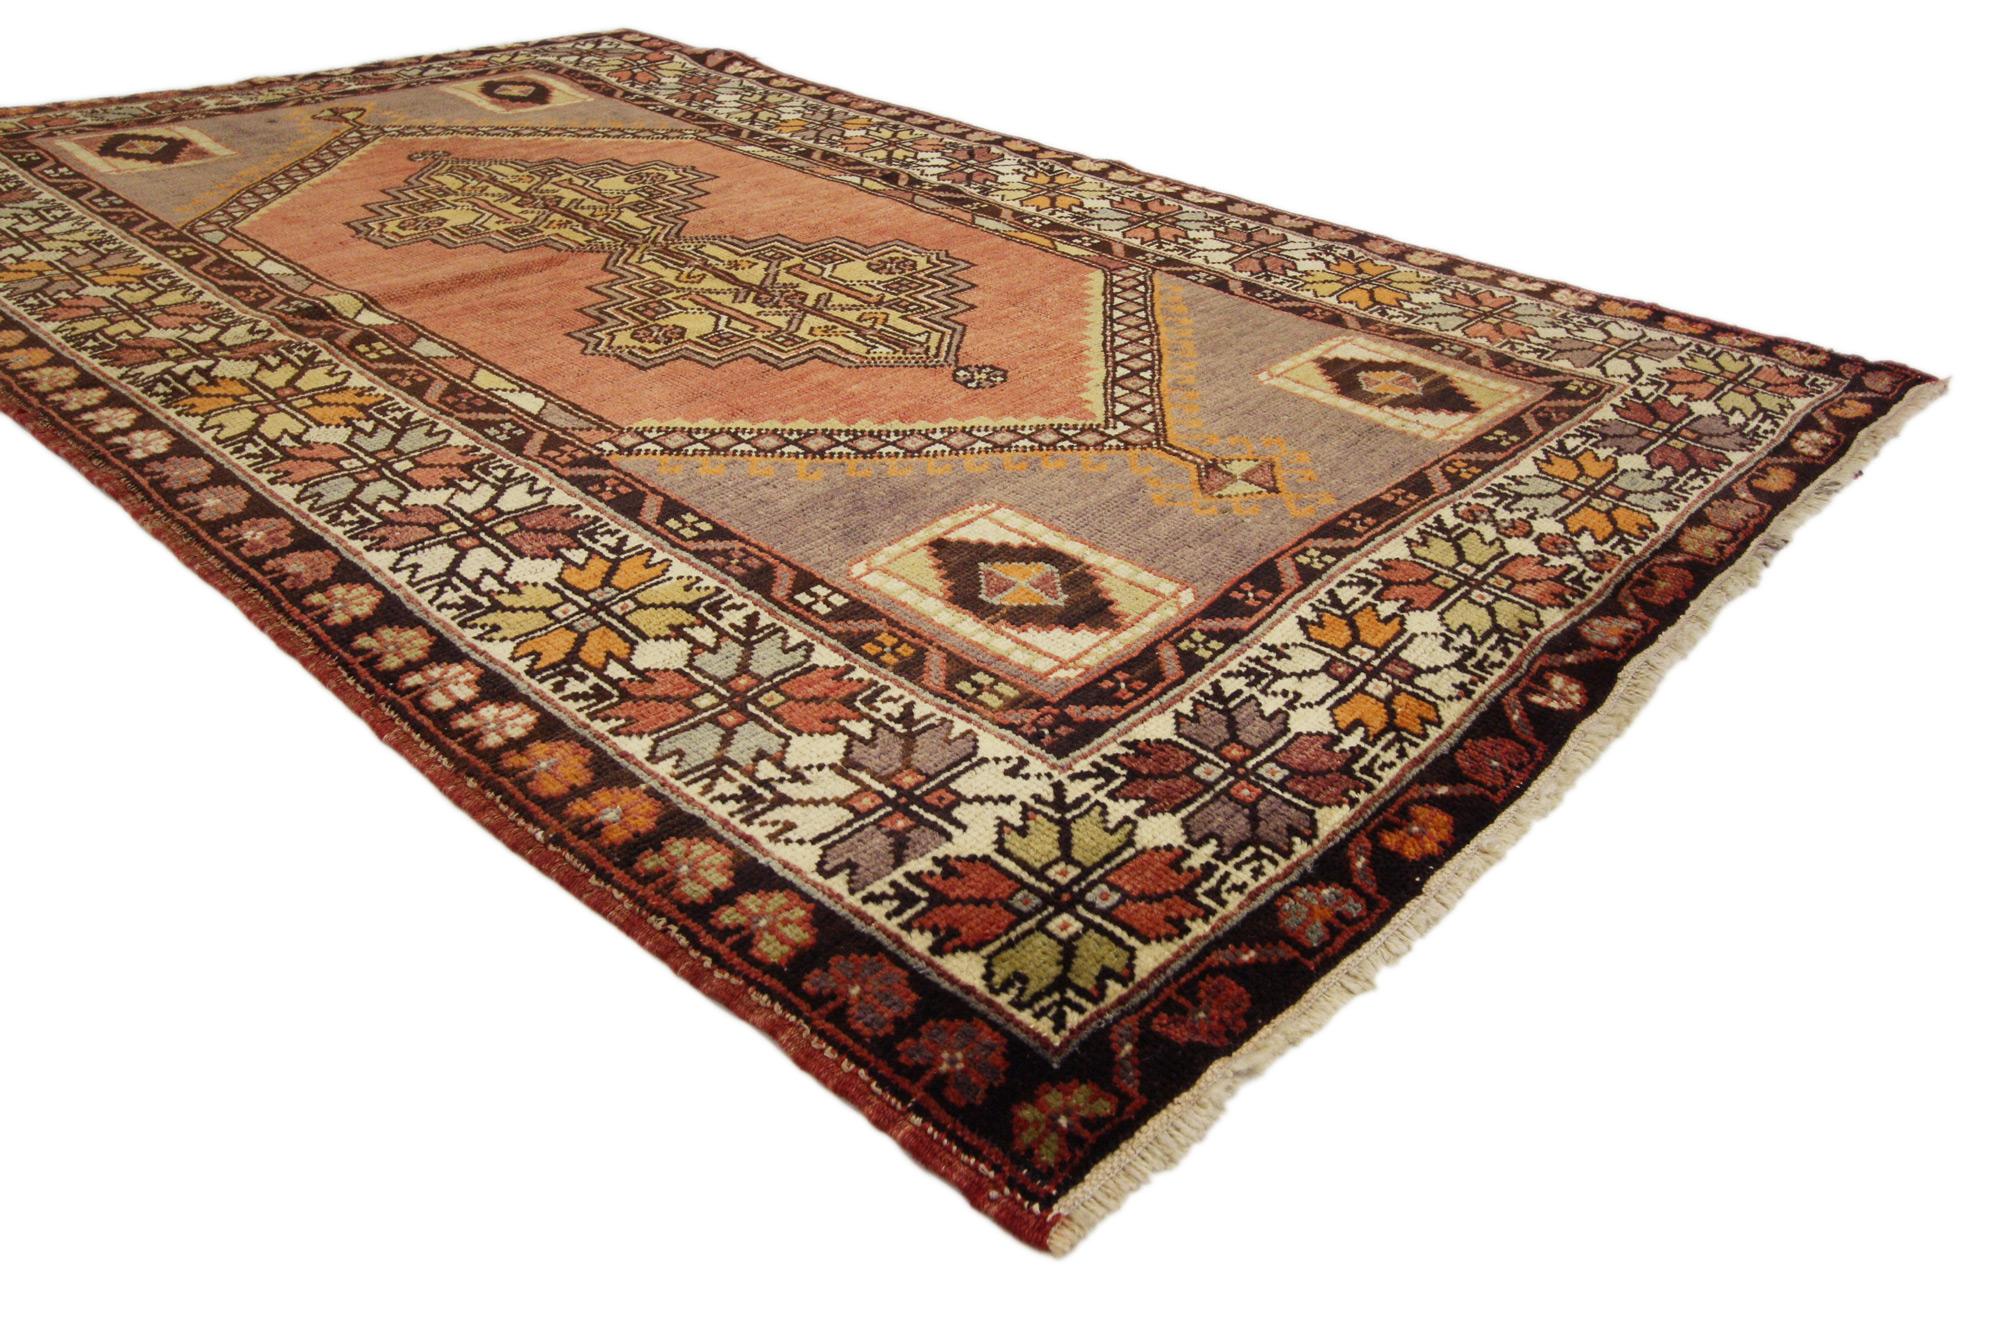 50155 Türkischer Oushak-Teppich Vintage, 03'07 x 05'11. 
Dieser handgeknüpfte türkische Oushak-Teppich aus Wolle vereint modernen Stil mit traditioneller Sensibilität. Das verschlungene geometrische Muster und die erdige Farbgebung, die in dieses